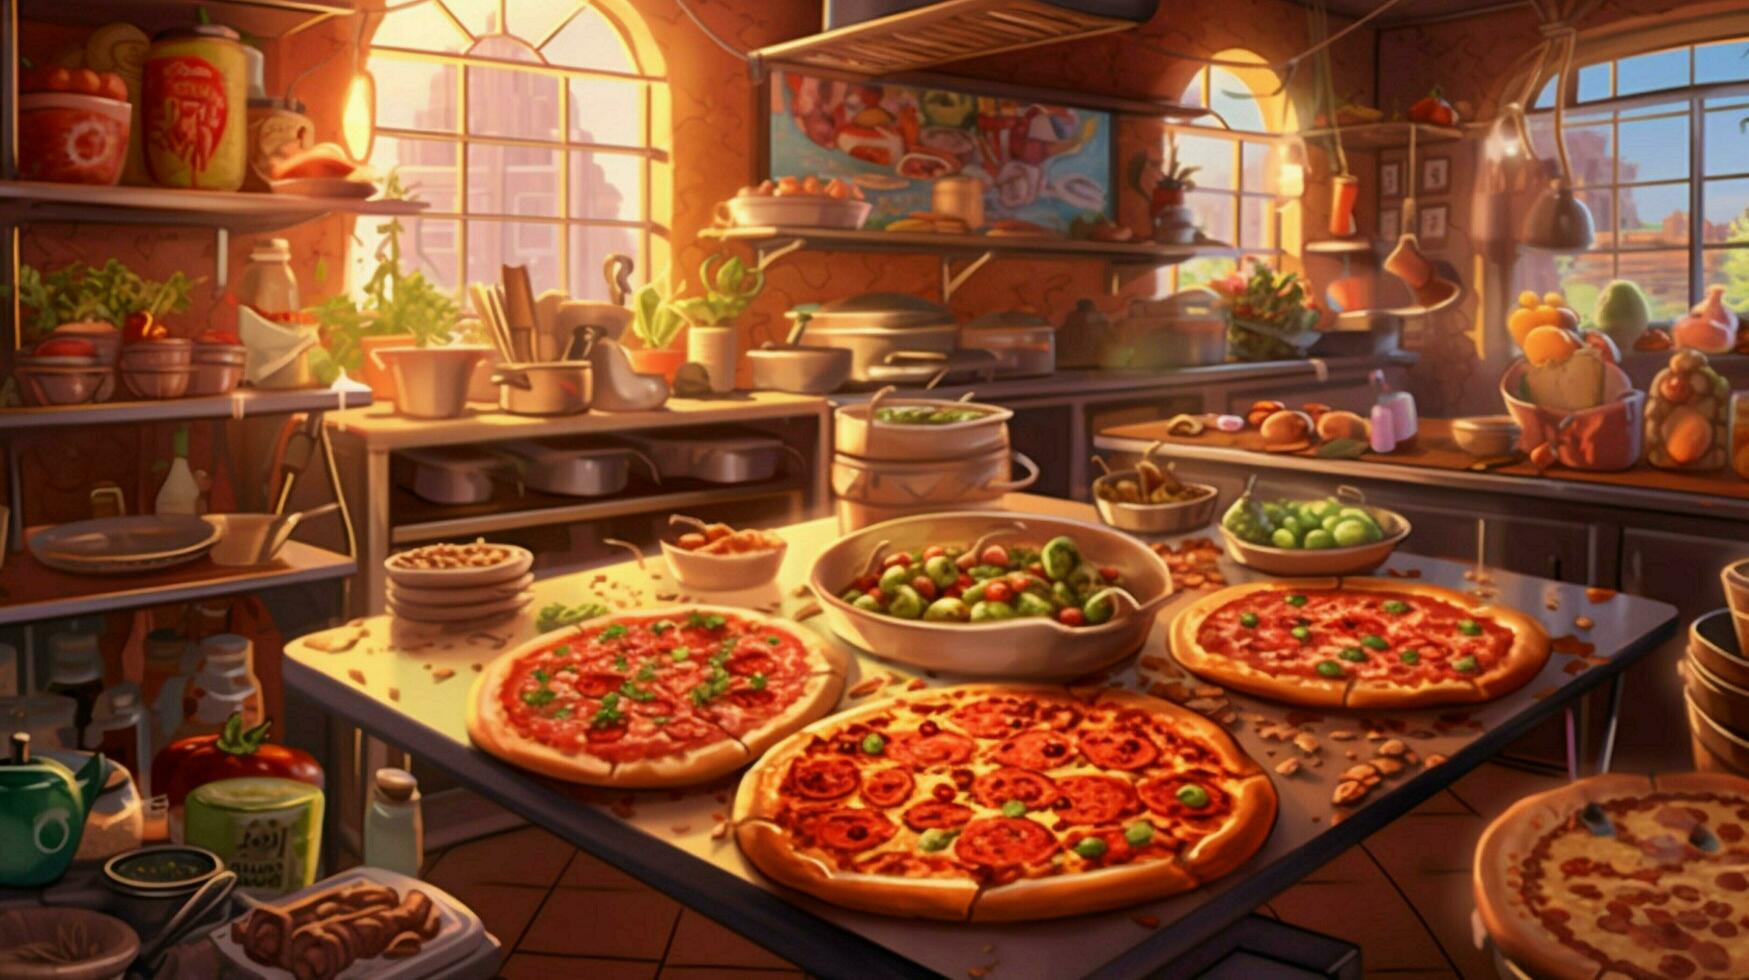 pizzaria com variedade do pizzas e coberturas foto